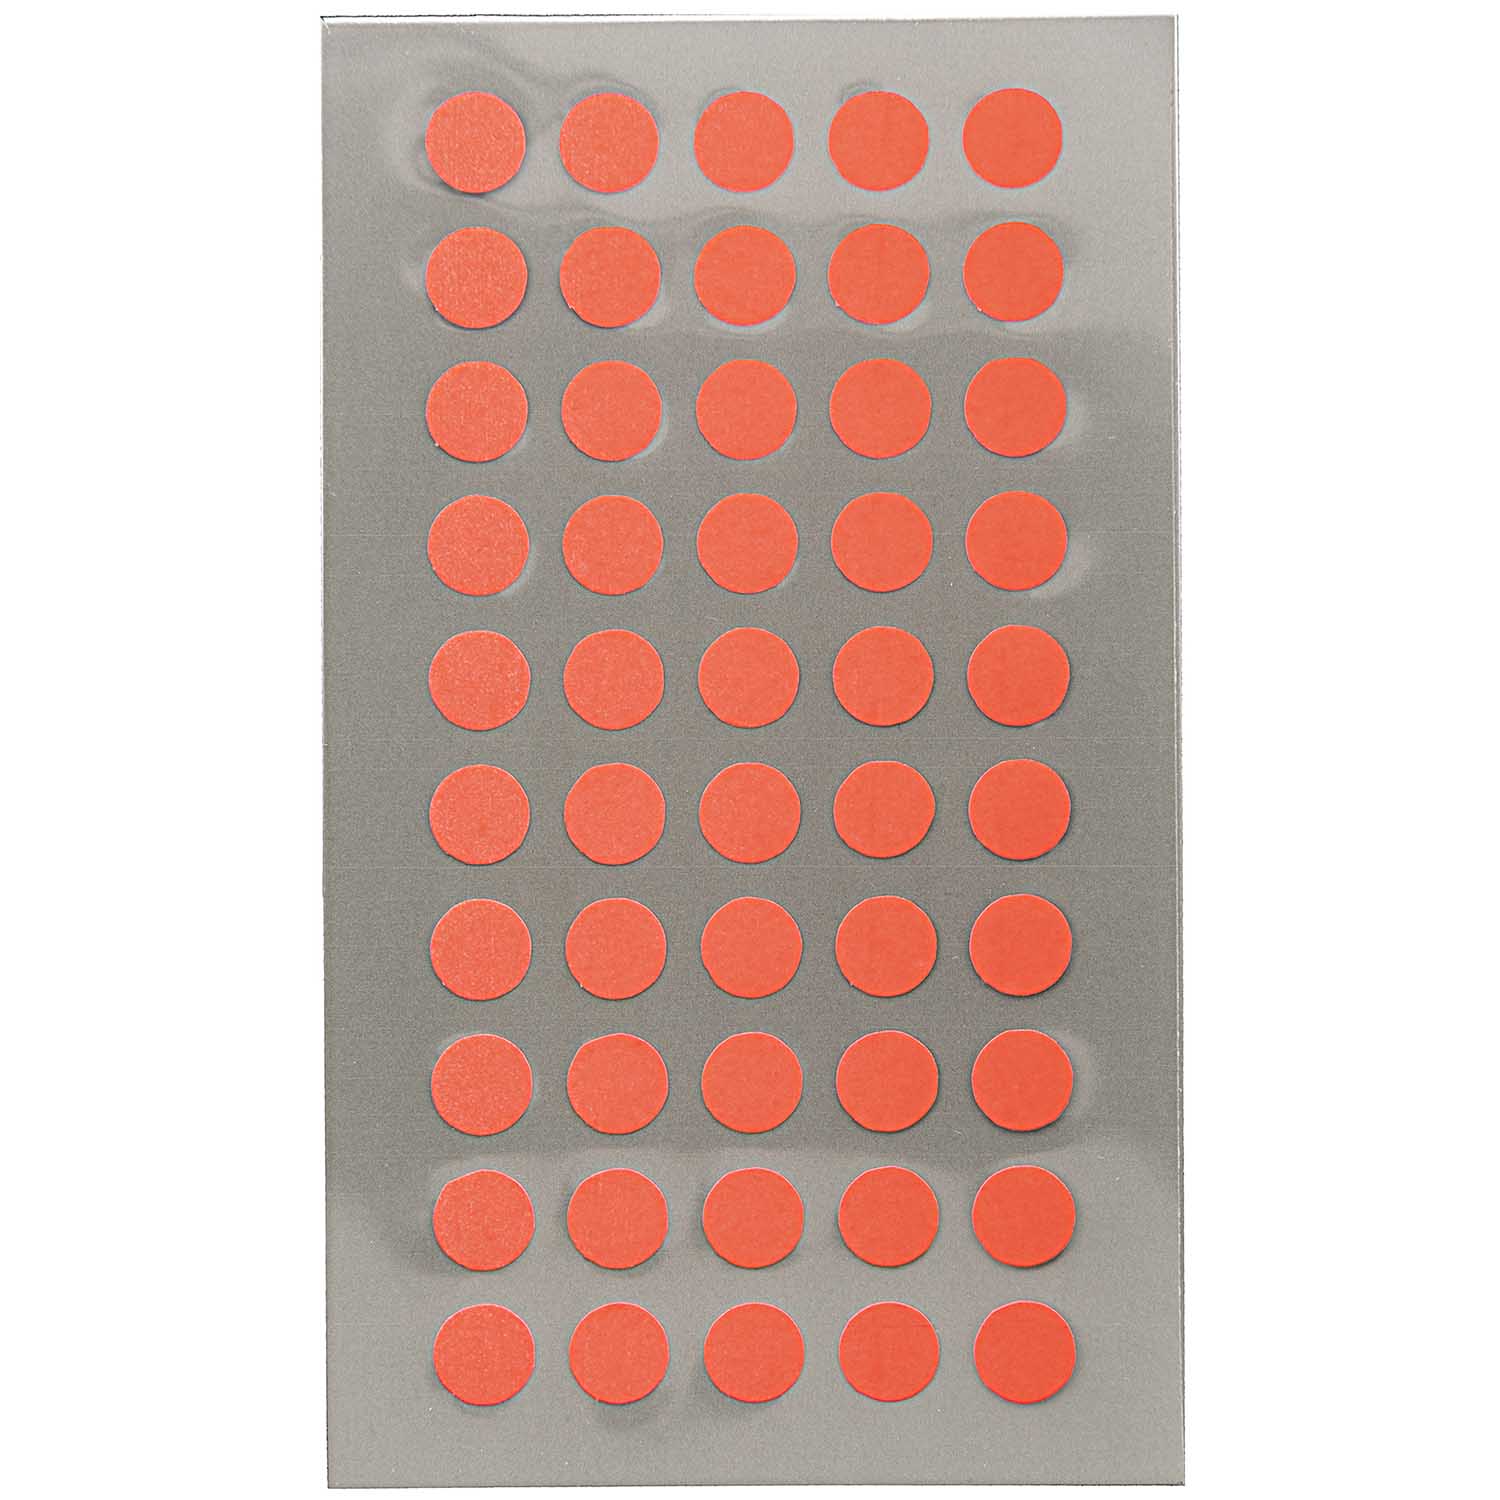 NEU Office Sticker, neon-rote Punkte, 8 mm, 4 Blatt